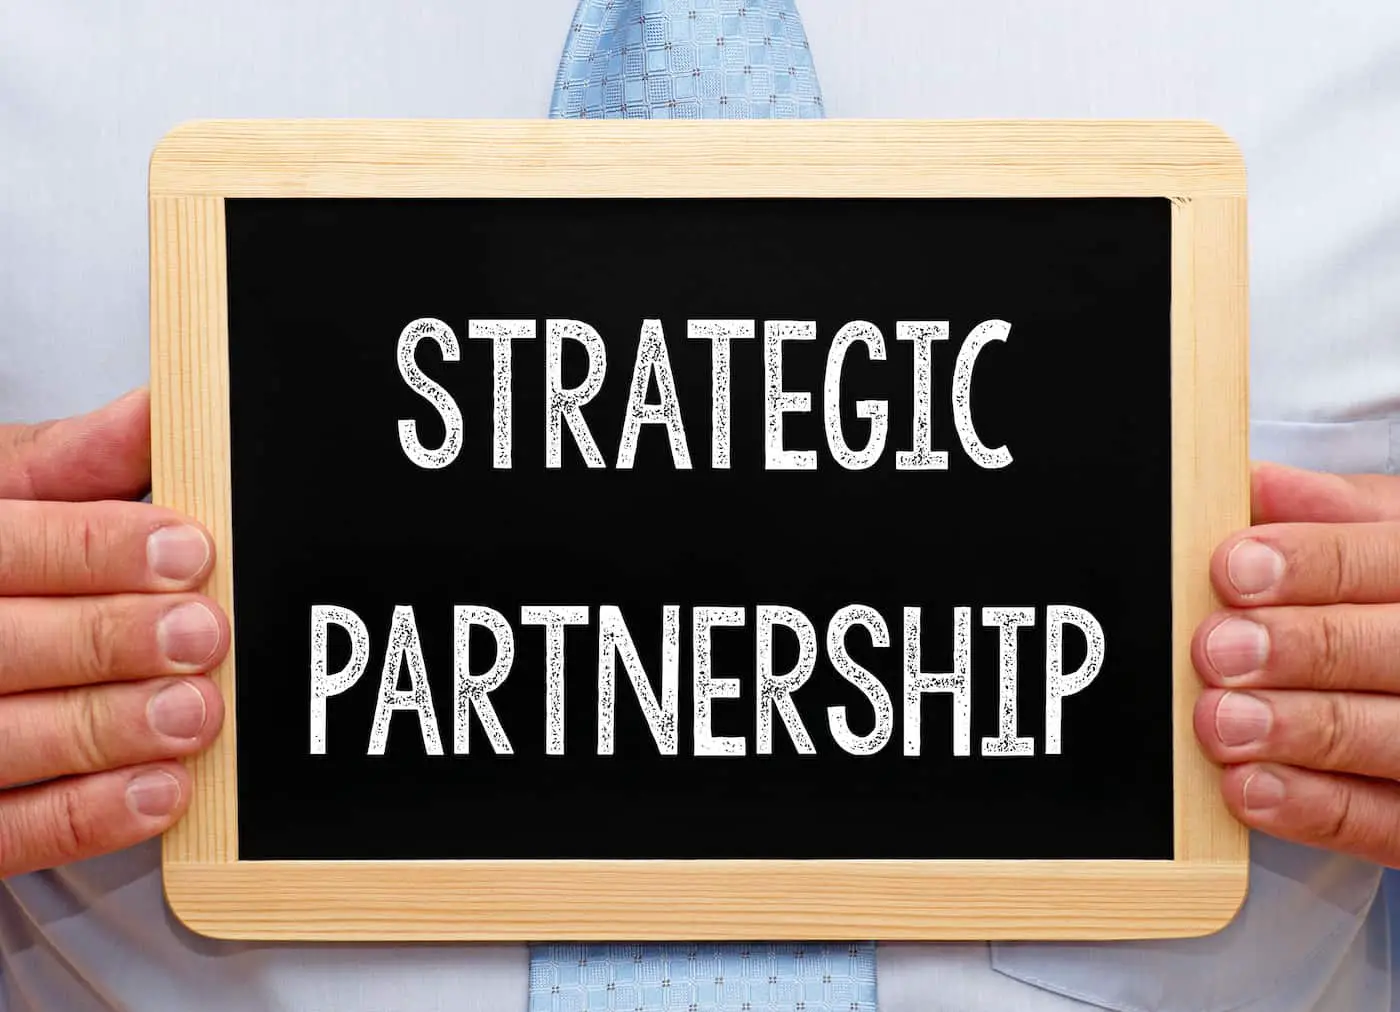 Strategic Partnership